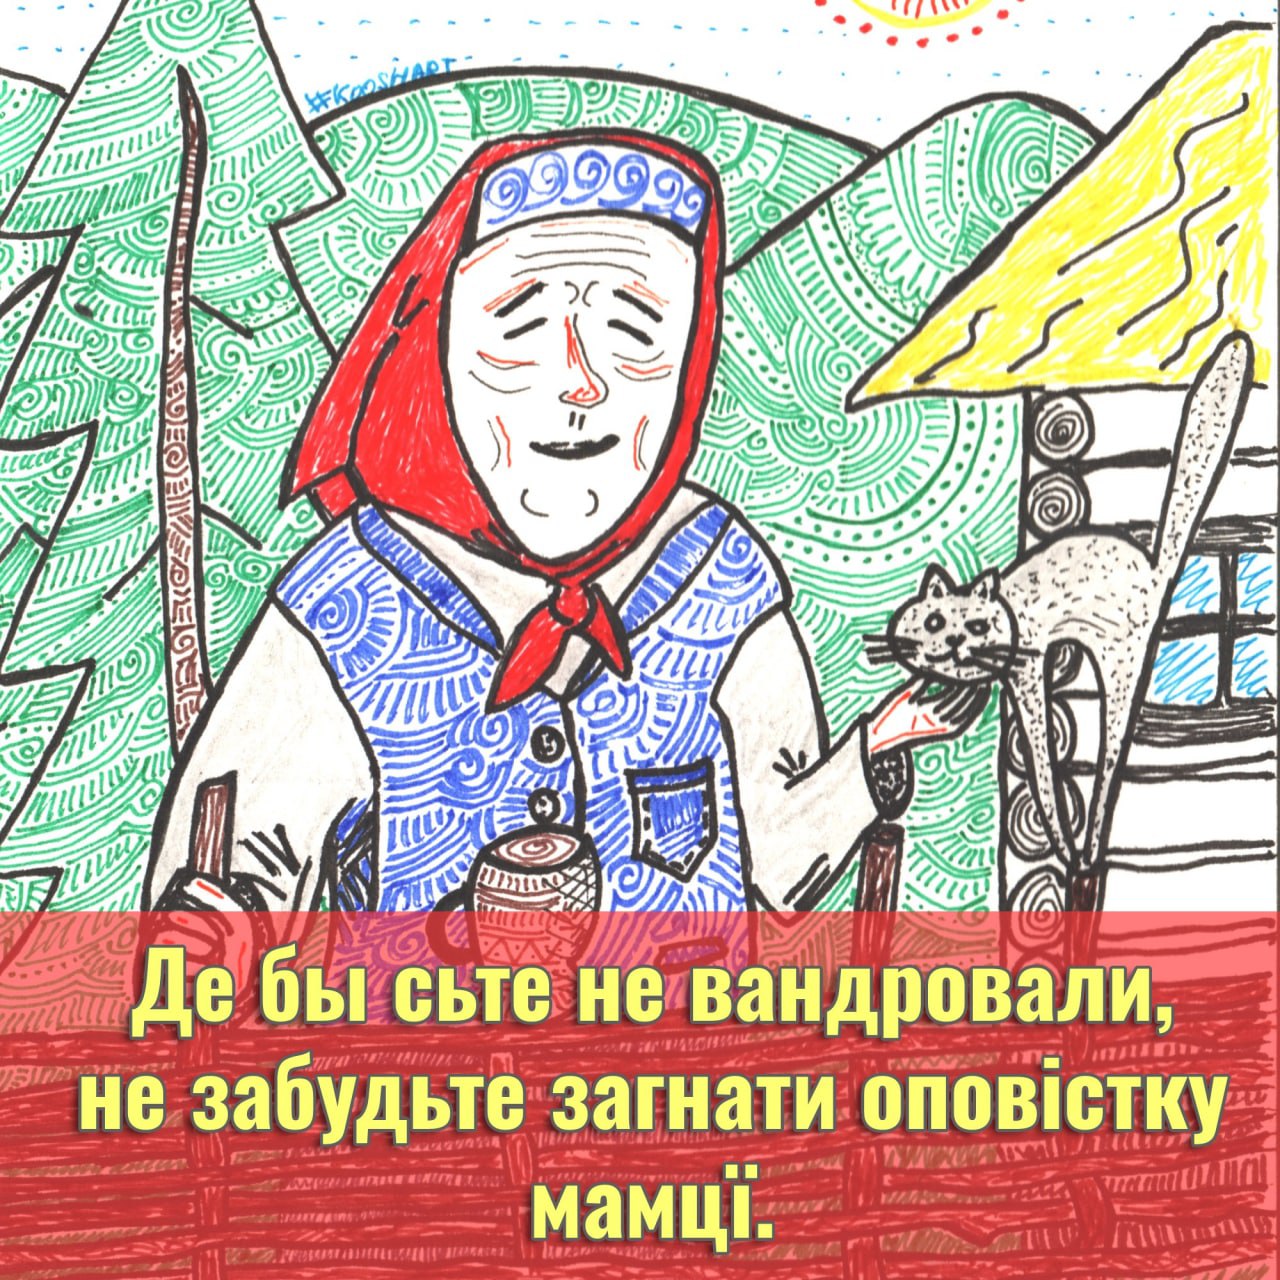 Русинский поэт М. Чикавдя поздравляет всех причастных с Днём Матери!